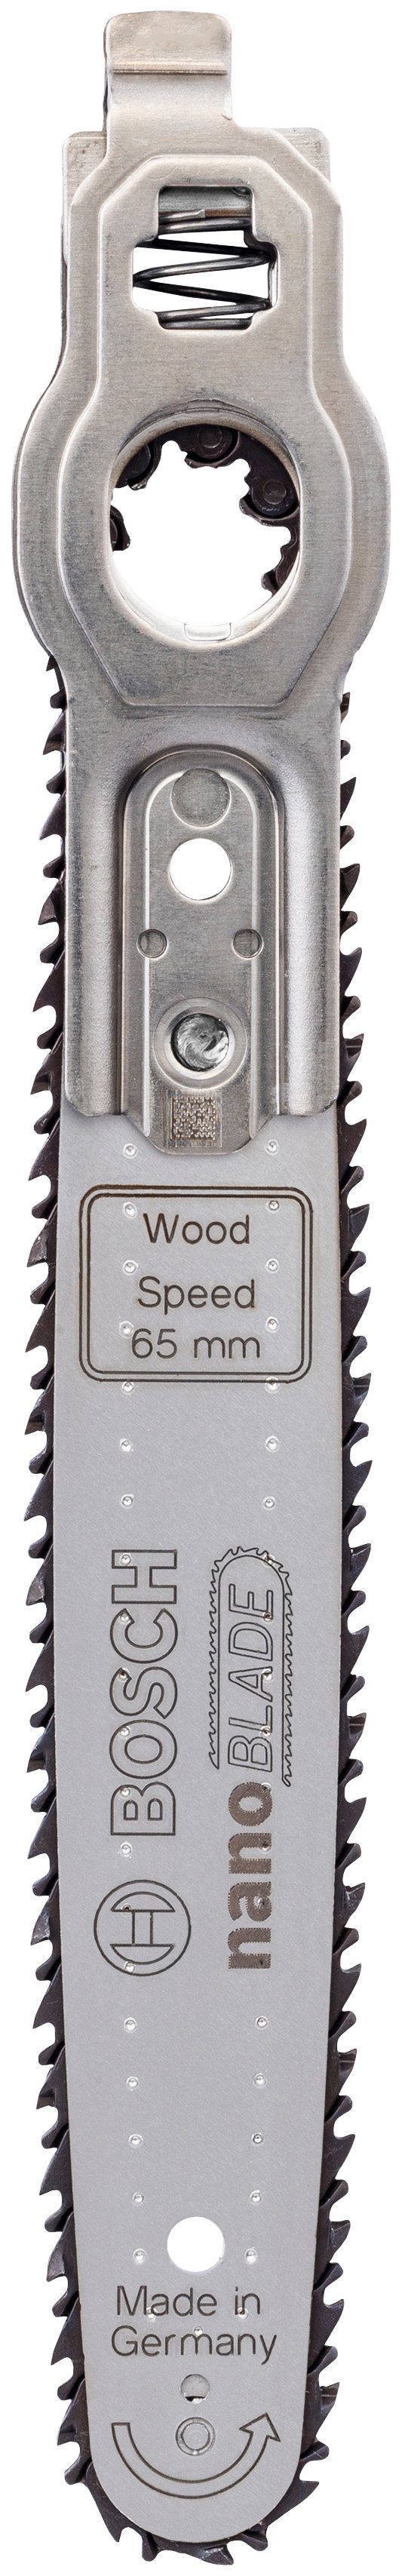 Bosch Home & Garden Sägeblatt nanoBLADE Wood Speed 65, Mikro-Kettensägeblatt nanoBLADE Wood Speed 65